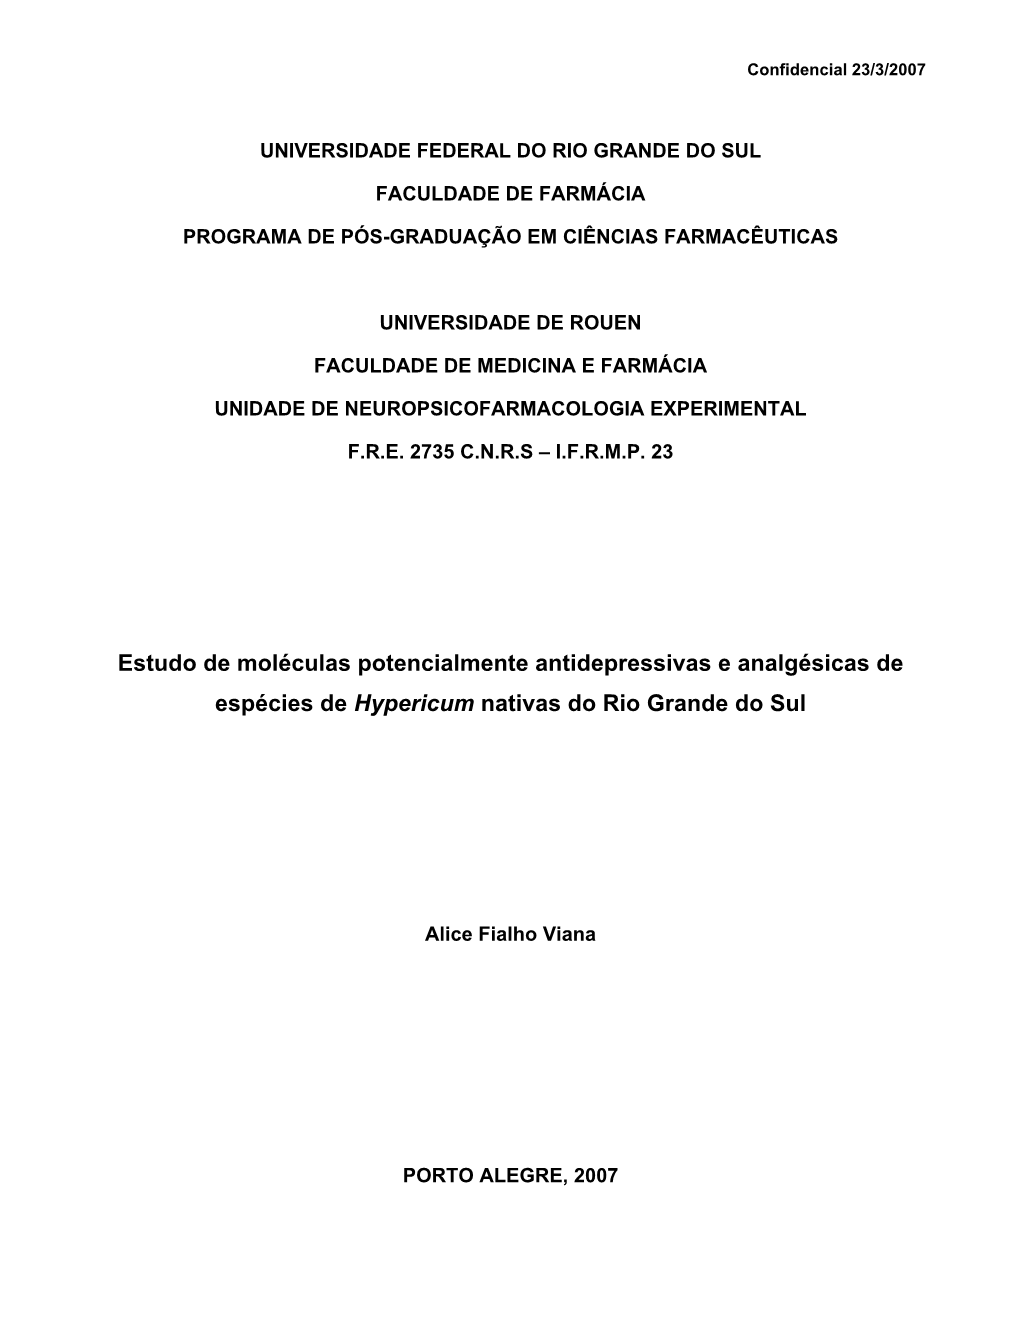 Estudo De Moléculas Potencialmente Antidepressivas E Analgésicas De Espécies De Hypericum Nativas Do Rio Grande Do Sul